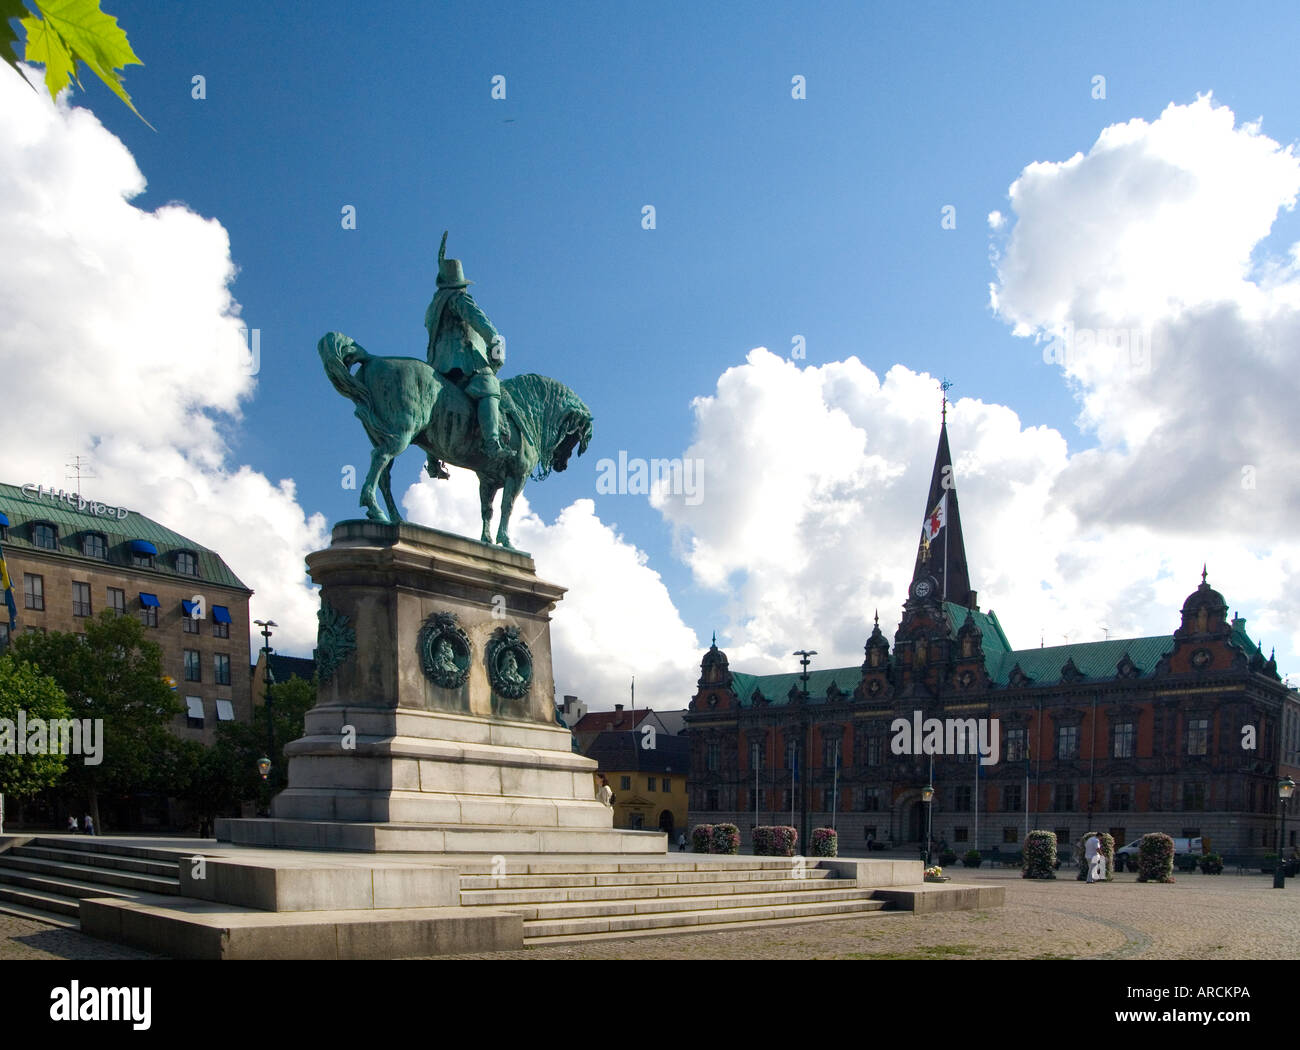 Die Statue von König Karl X auf dem Platz namens Stortorget in Malmö Schweden mit dem Rathaus und der Turm der St. Peterskirche Stockfoto